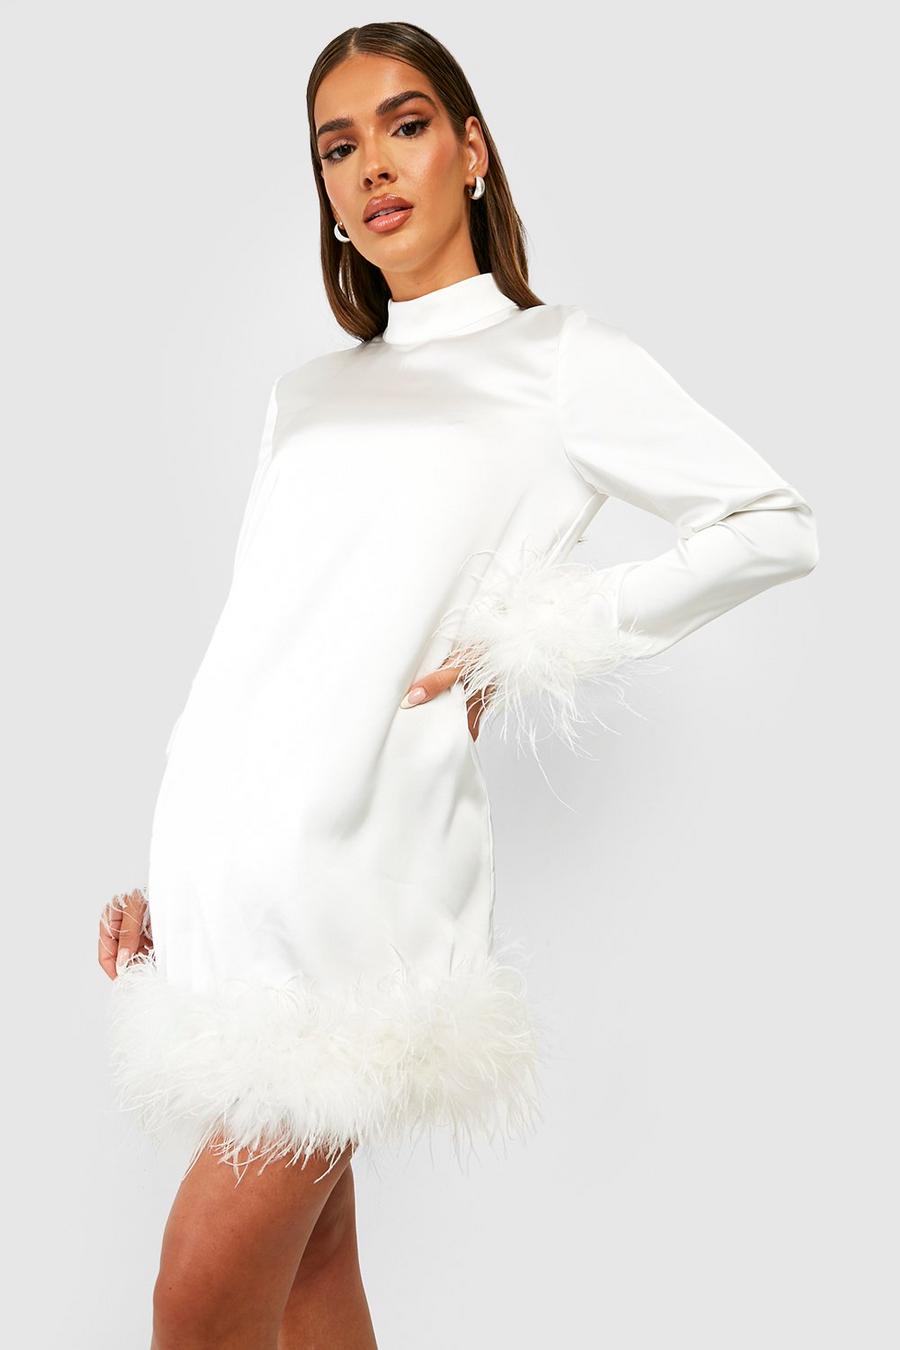 Vestido mini de fiesta con plumas y cuello alto, Ivory bianco